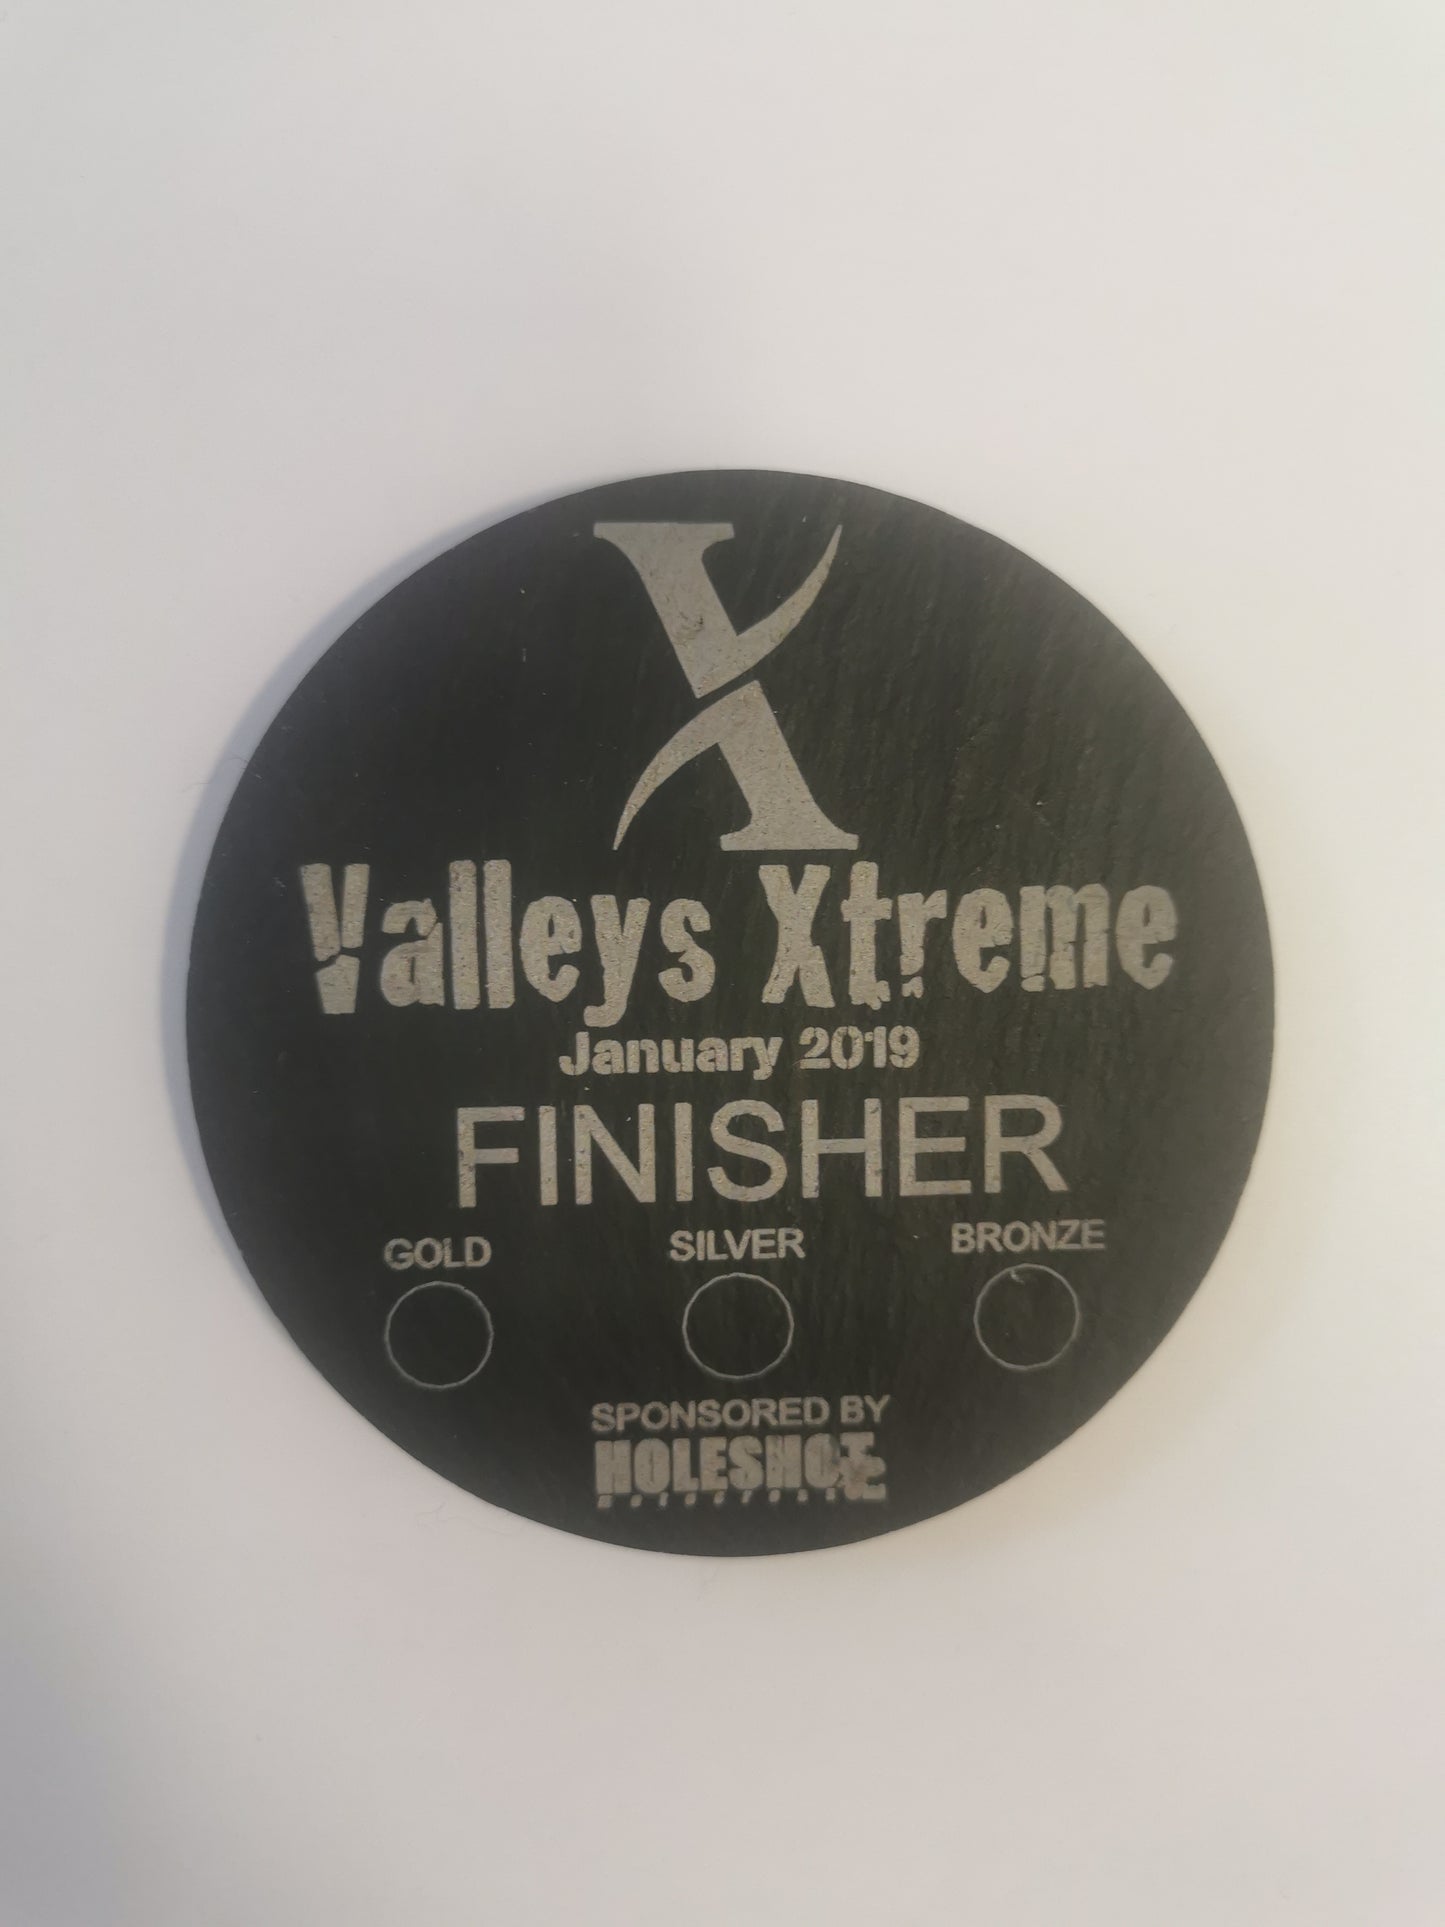 Valleys Xtreme 2019 Finishing Coaster